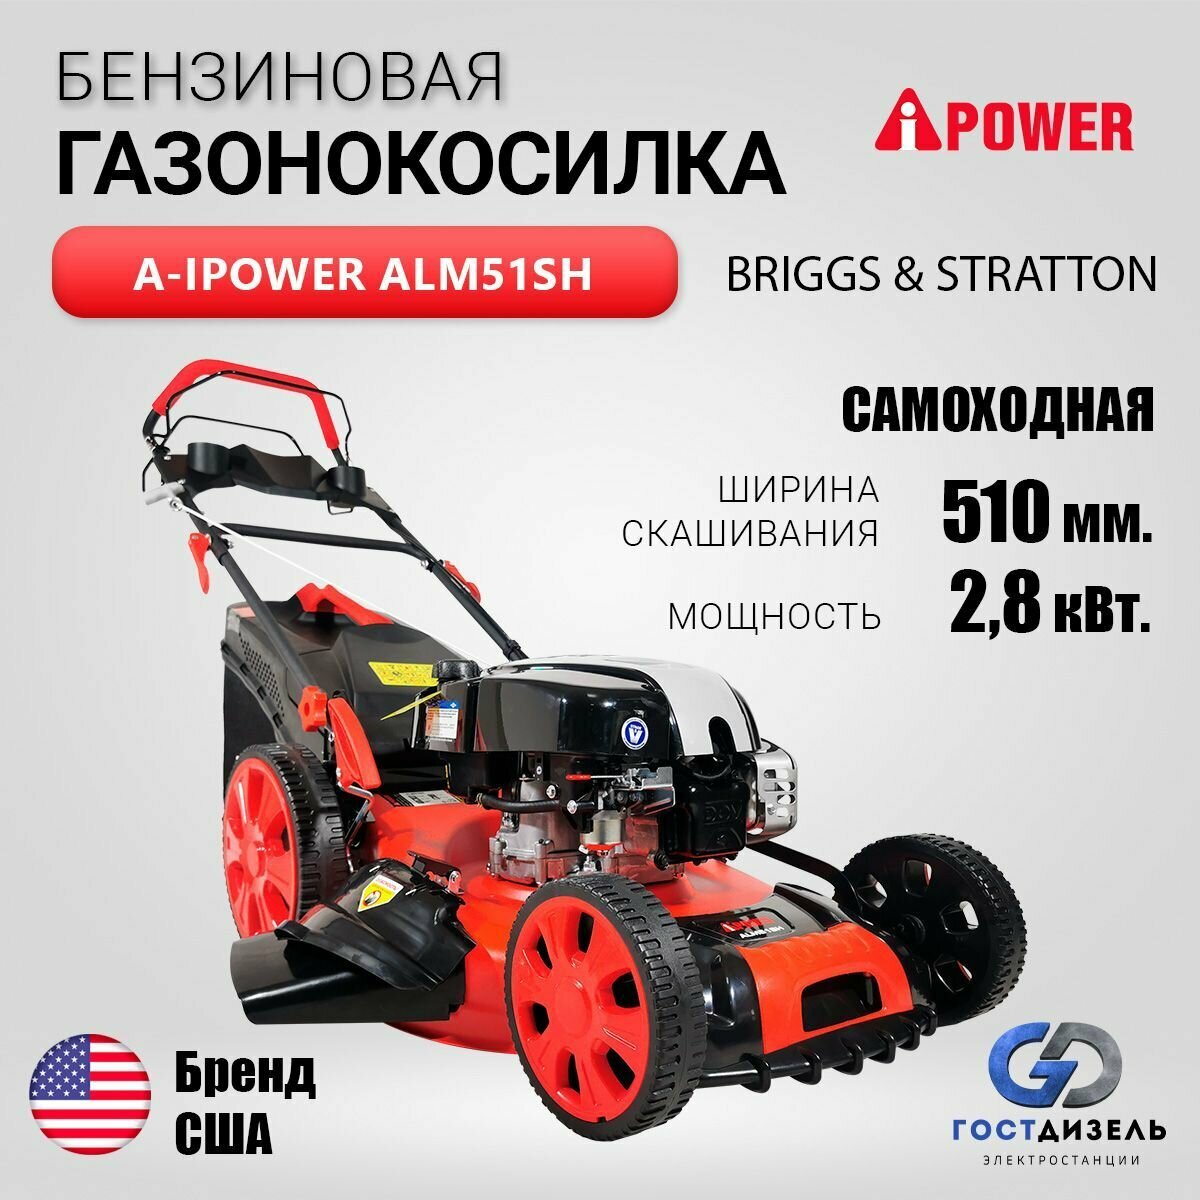 Бензиновая газонокосилка A-iPower ALM51SH 6 л.с. 51 см